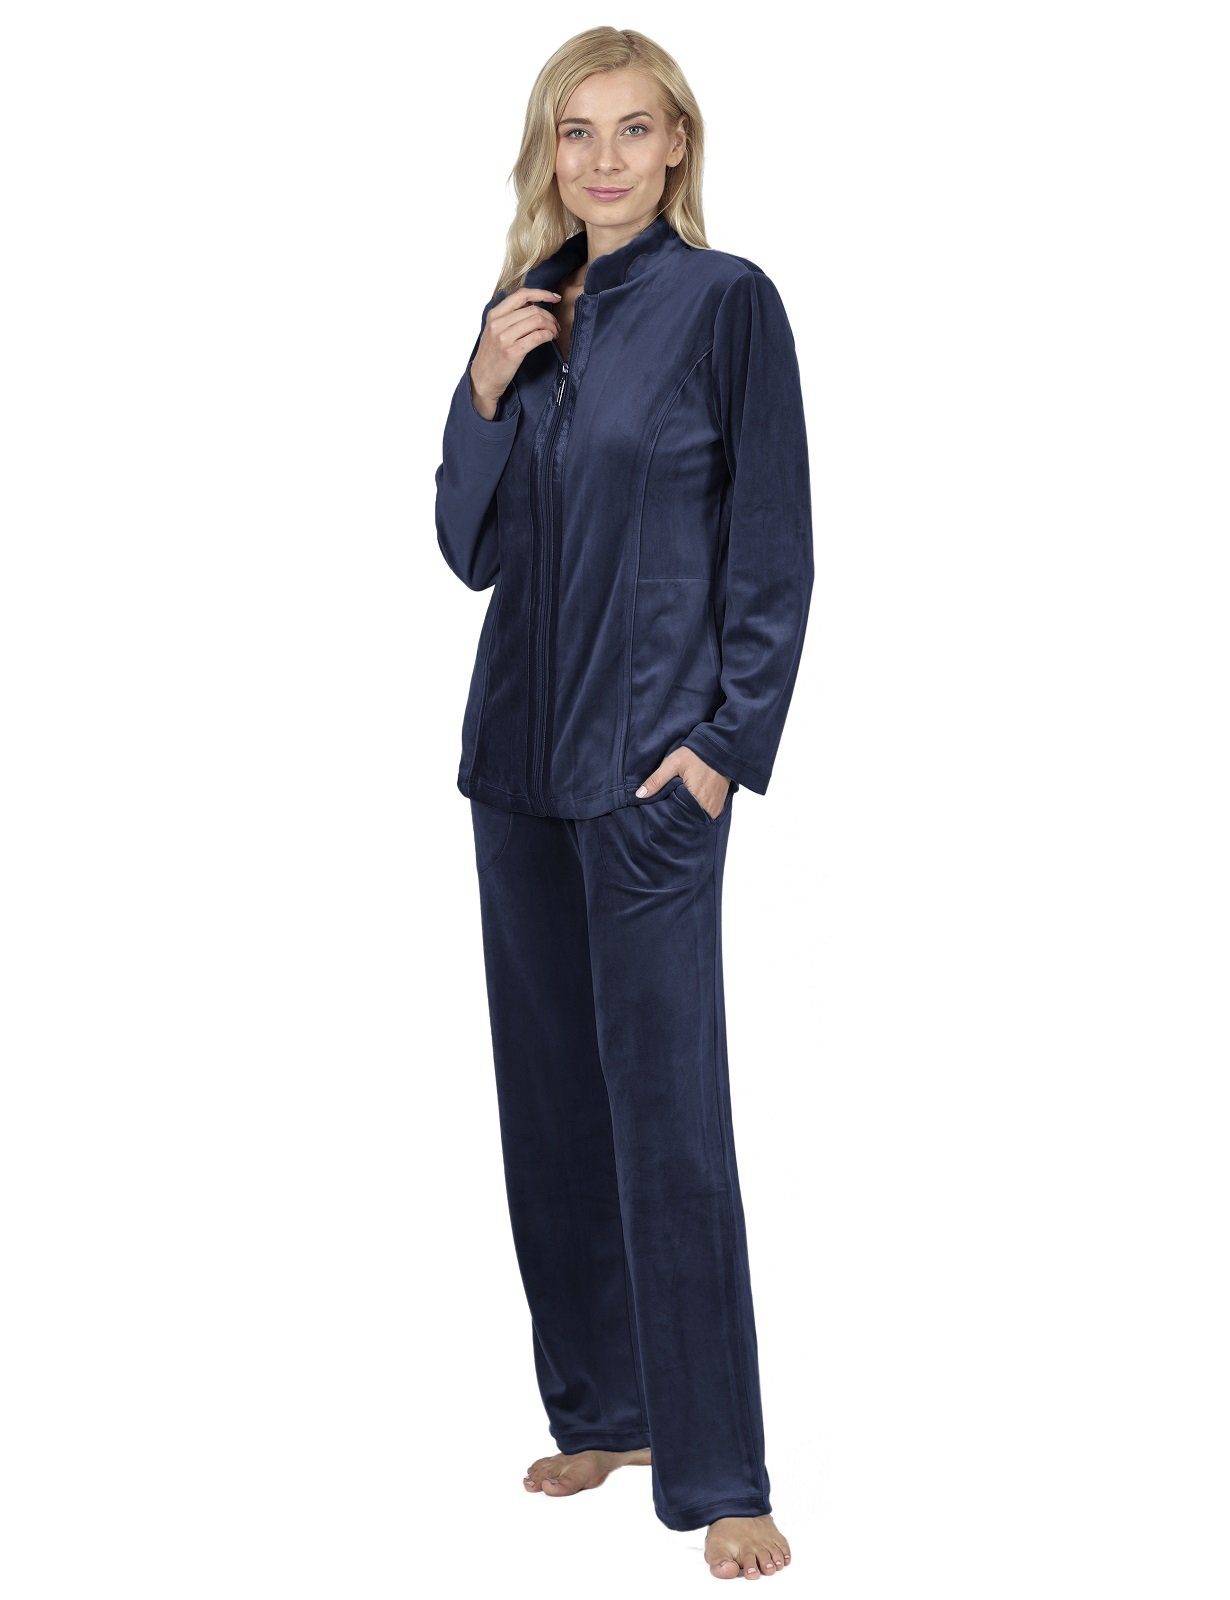 RAIKOU Hausanzug Damen Nicki Freizeitanzug Homewear Paillettenreihen Nachtblau Hausanzug mit Reißverschluss